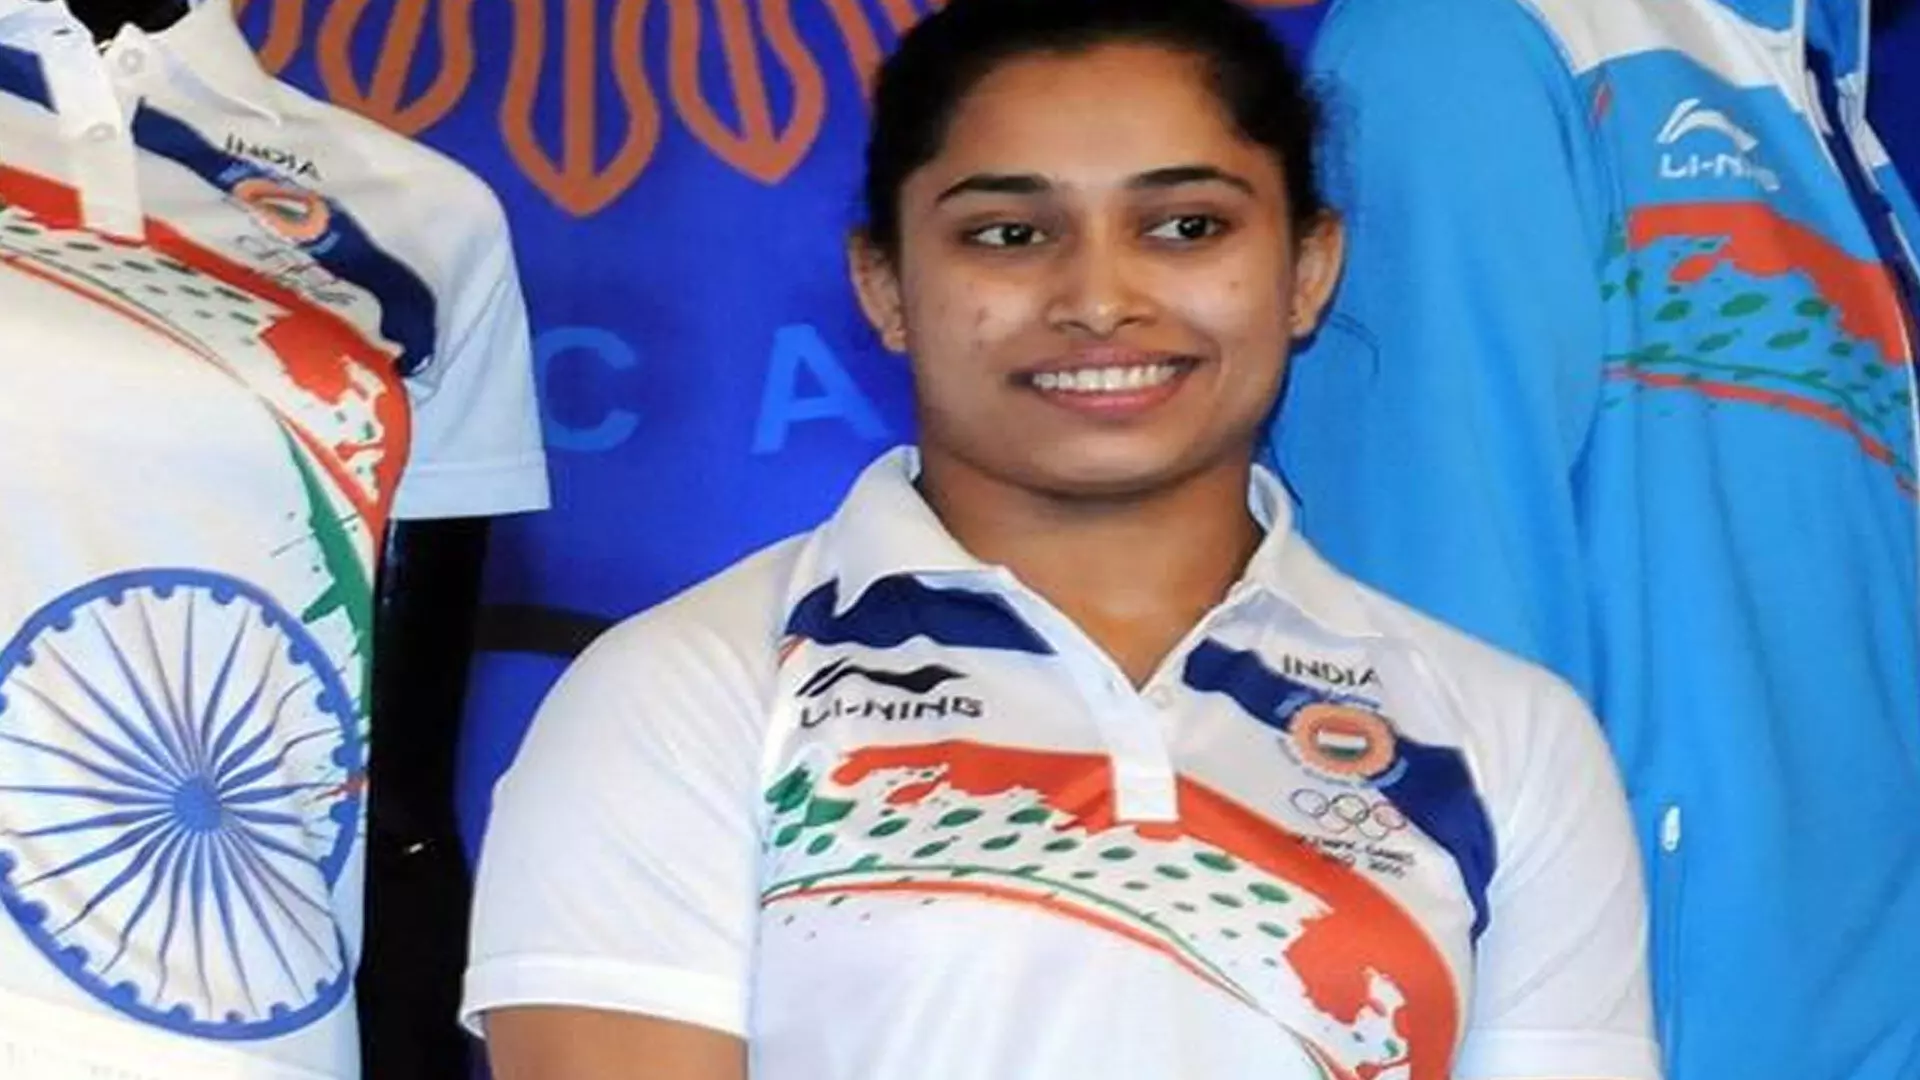 दीपा करमाकर ने इतिहास रचा, एशियाई सीनियर चैंपियनशिप में स्वर्ण जीतने वाली पहली भारतीय जिमनास्ट बनीं